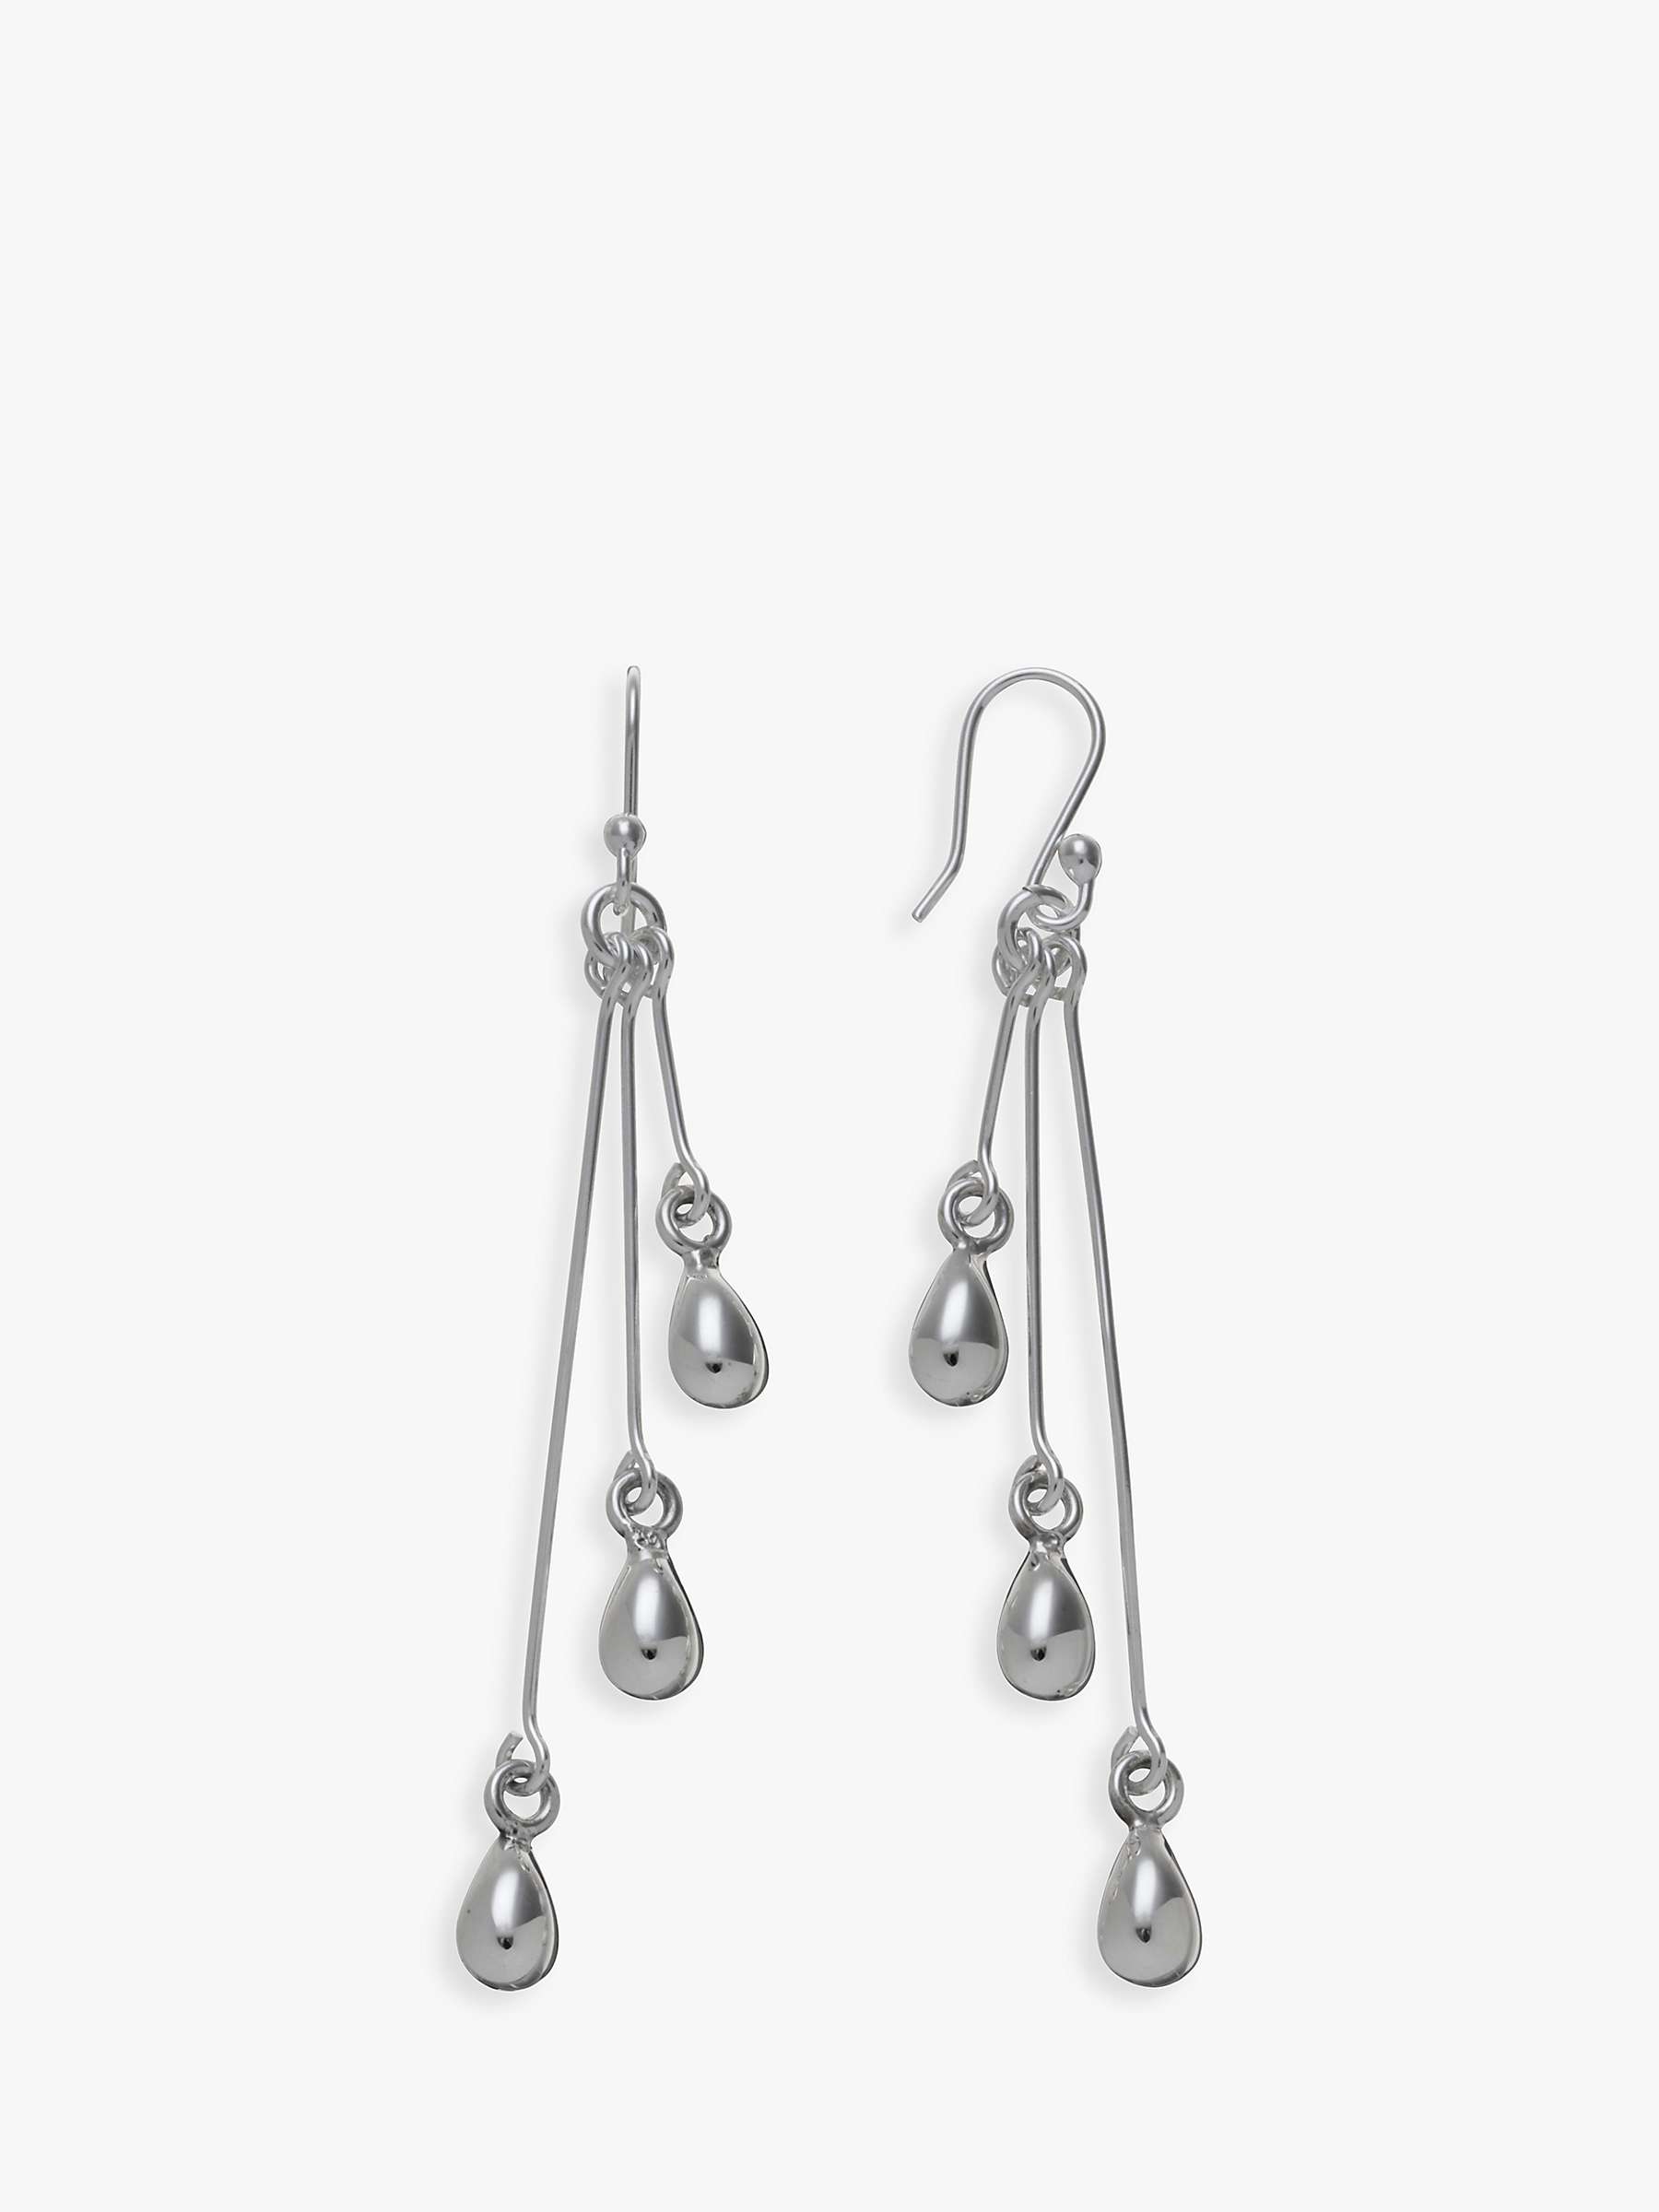 Buy Andea Sterling Silver Three Tears Drop Earrings Online at johnlewis.com